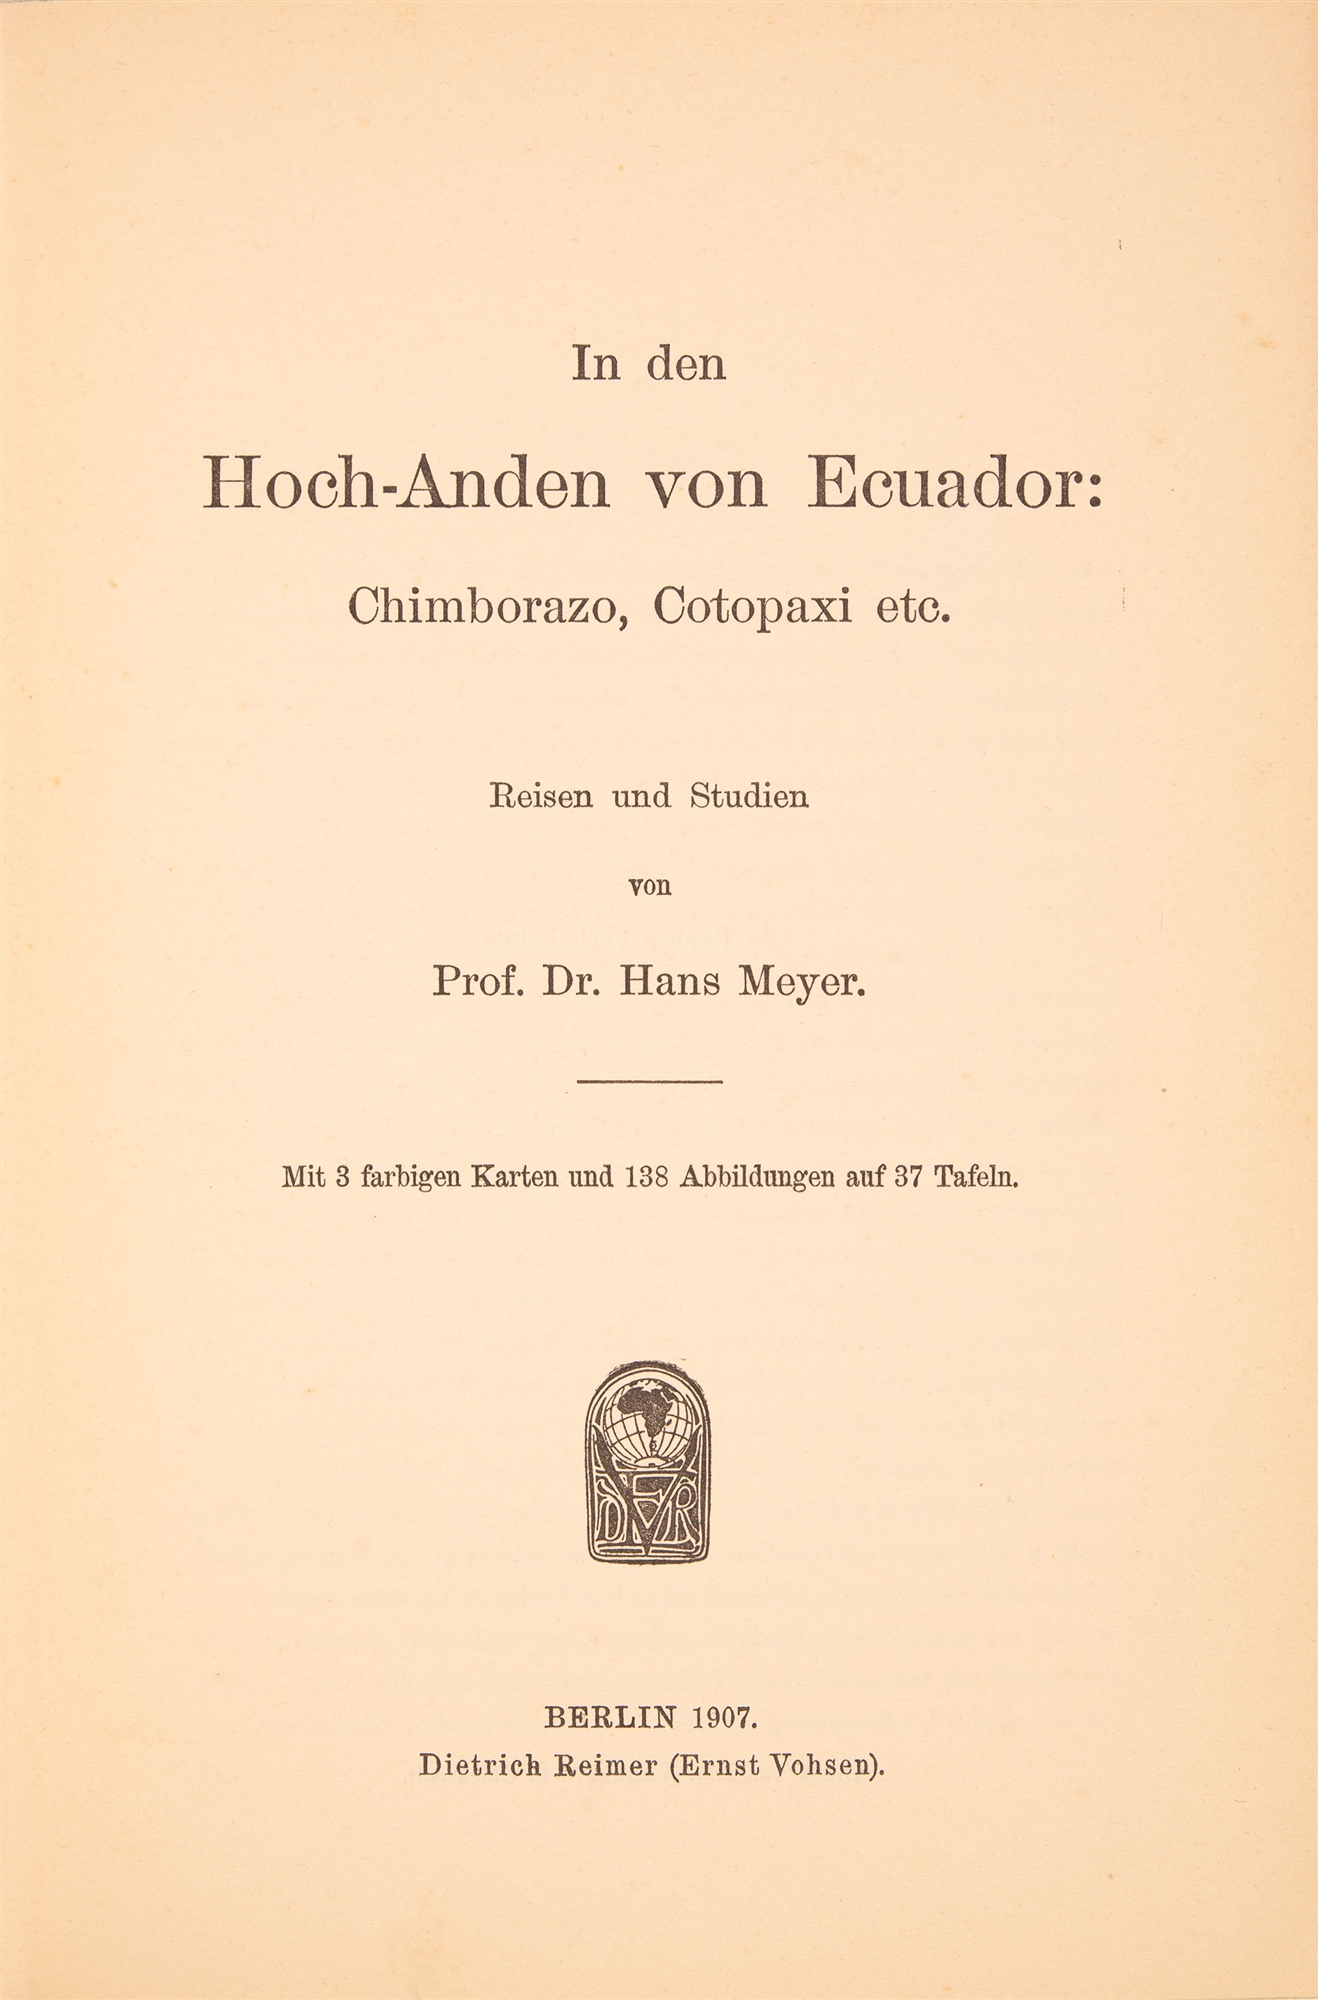 H. Meyer, In den Hoch-Anden von Ecuador. Bilderaltlas und Textband. Berlin 1907. - Image 2 of 4